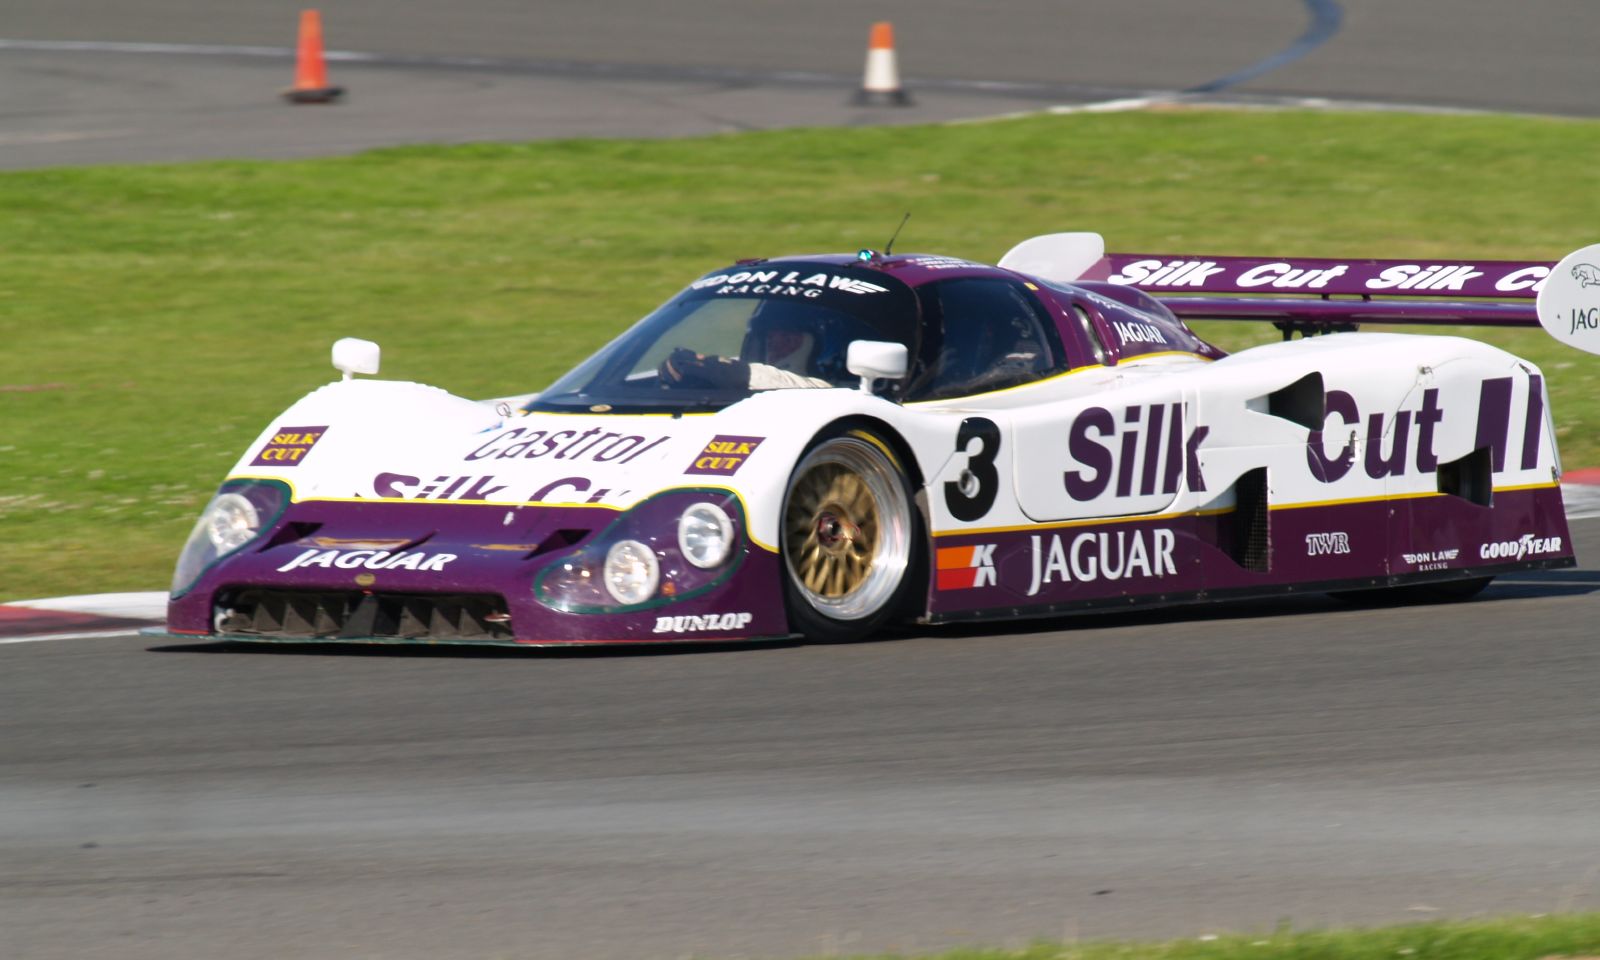 Jaguar XJR 12